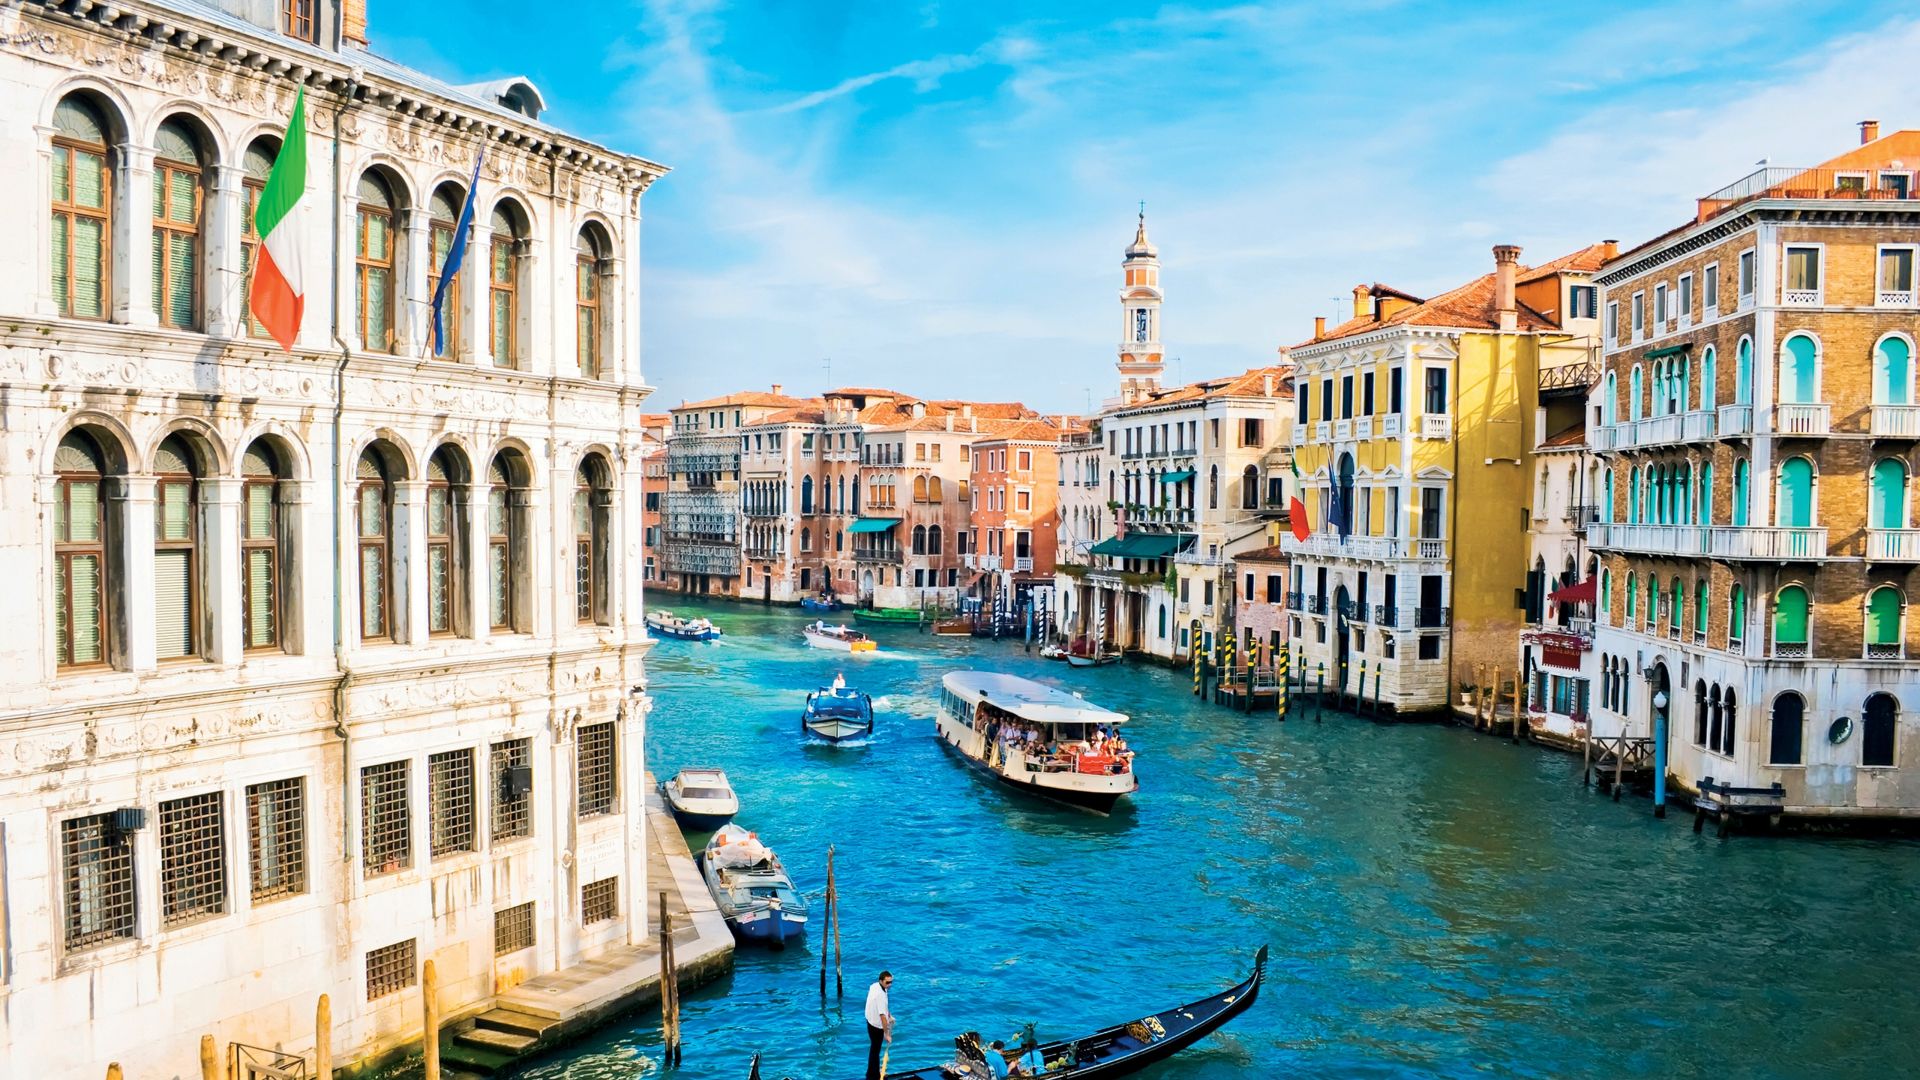 Большой канал, Венеция, Италия, путешествие, туризм, бронирование, Grand Canal, Venice, Italy, Europe, travel, tourism (horizontal)